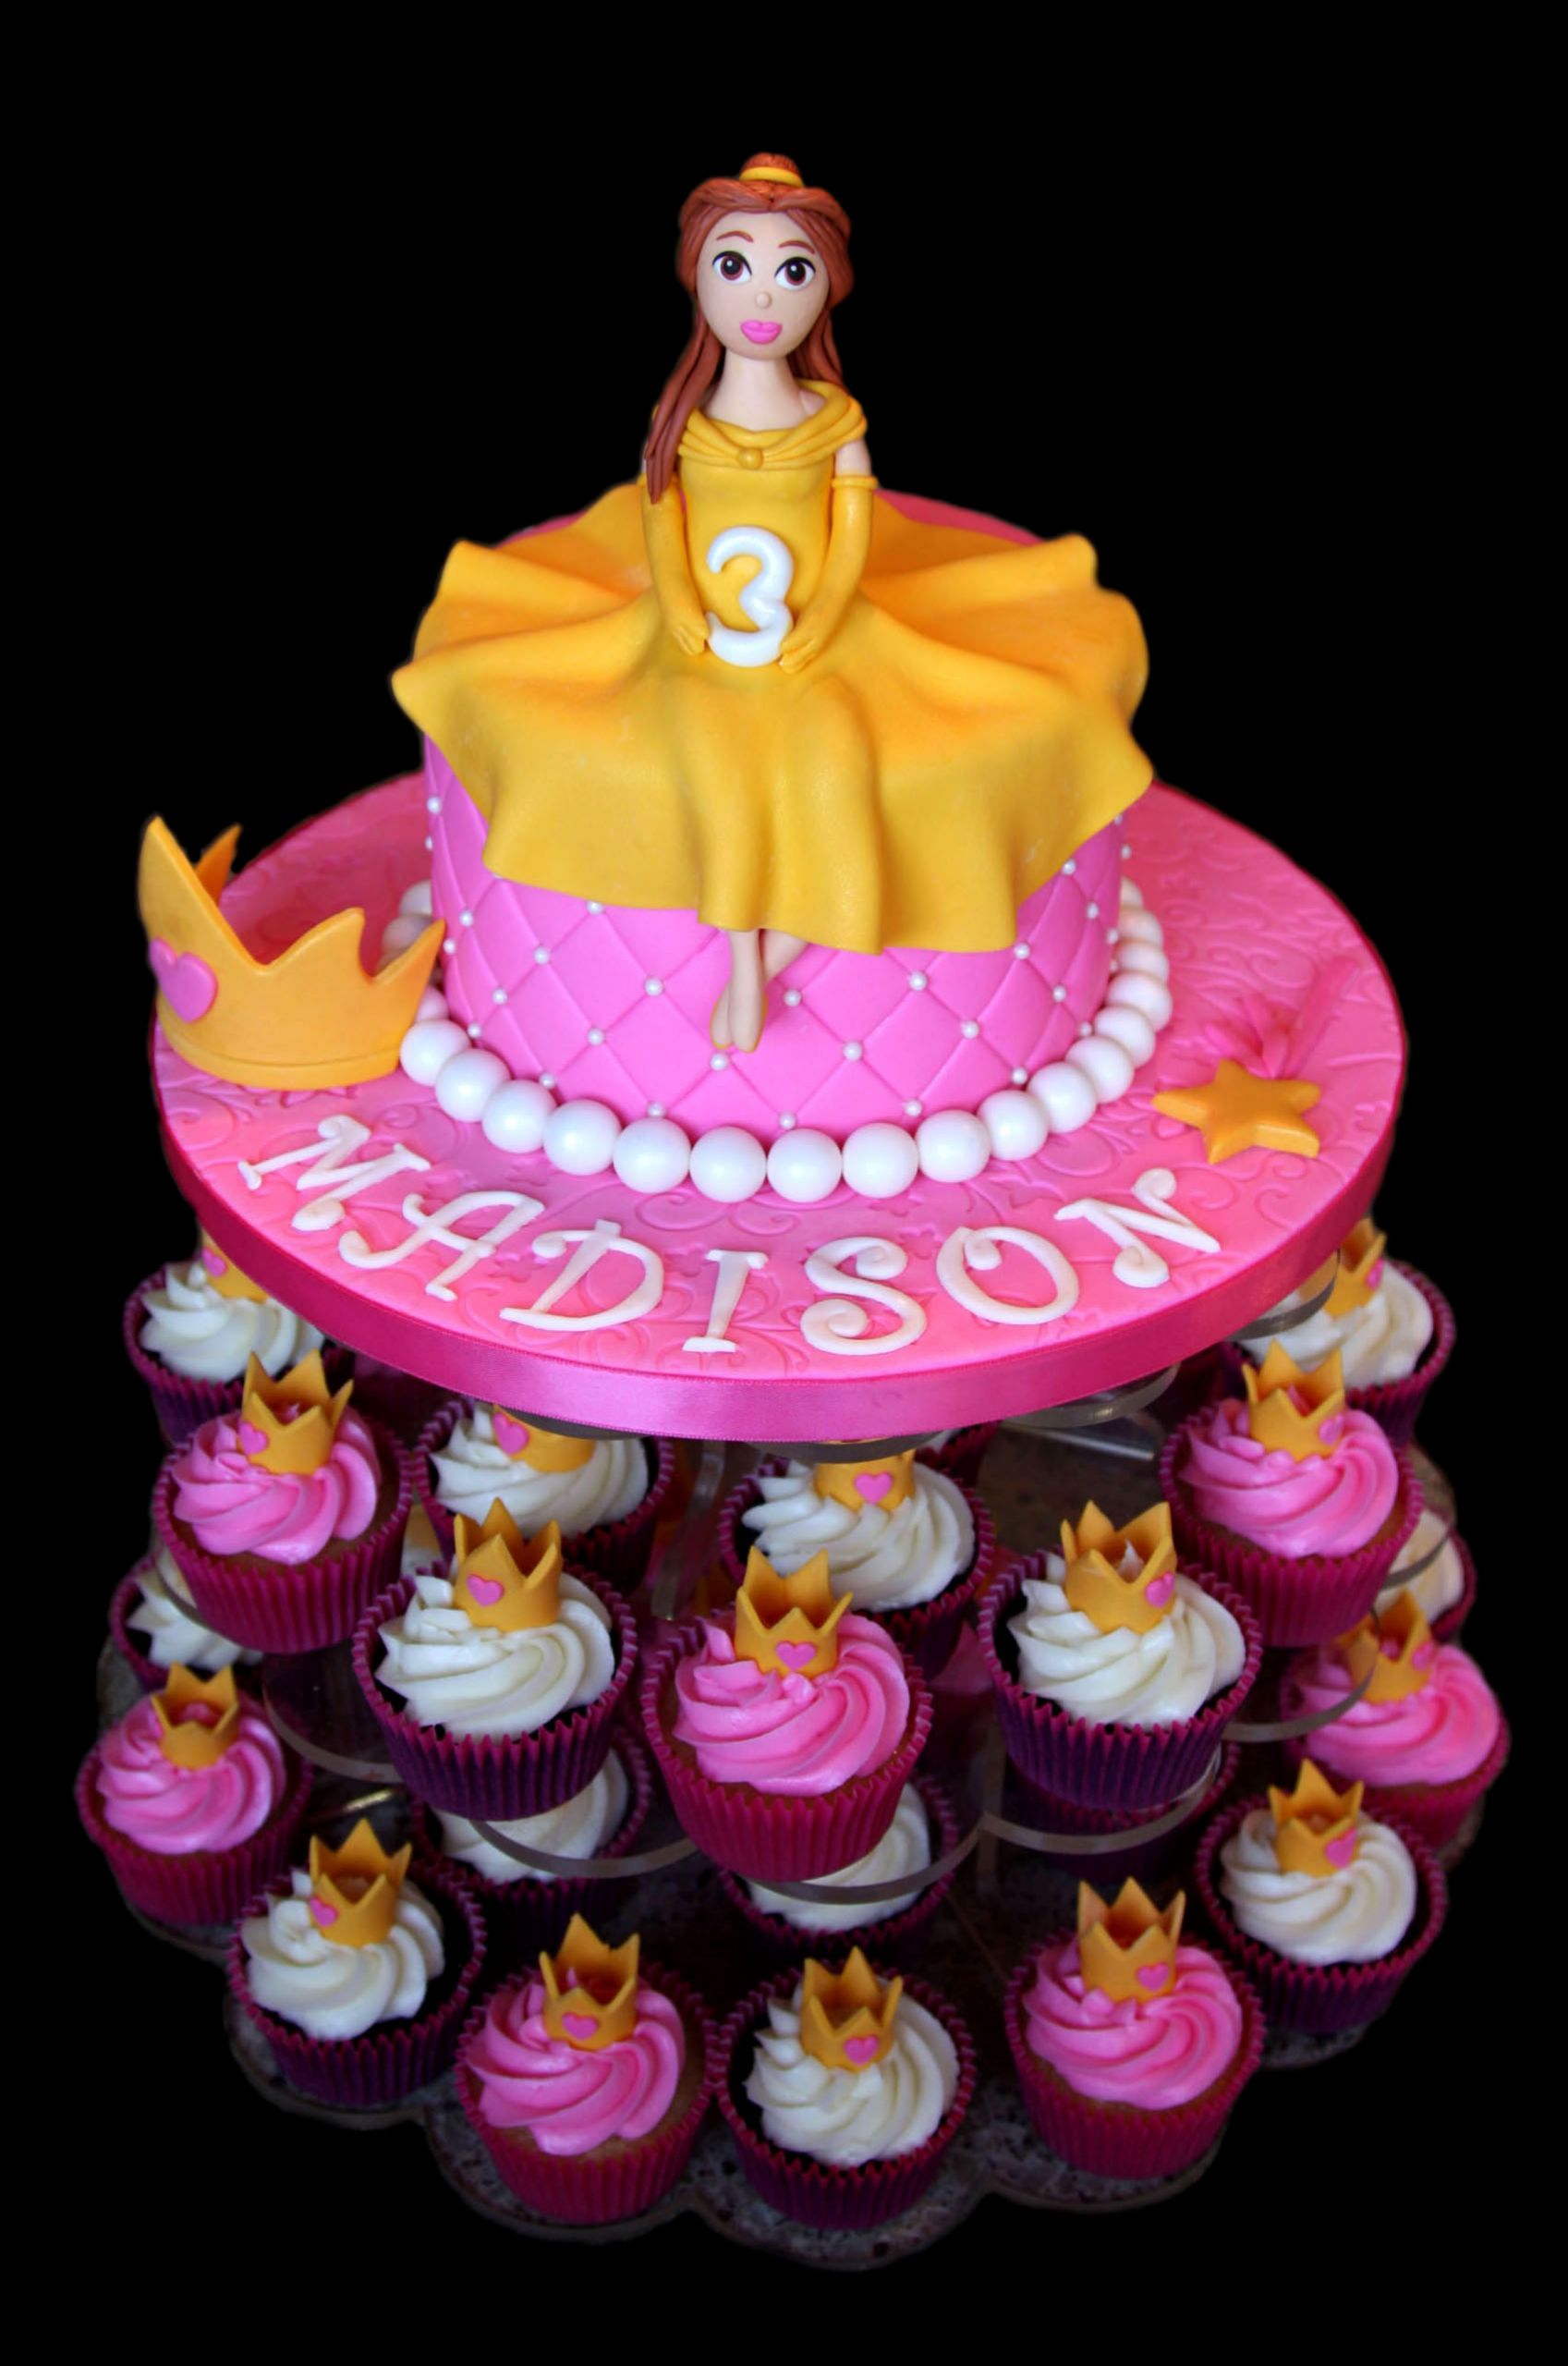 Food City Birthday Cakes
 SugarBabies Custom Birthday Cake Gallery